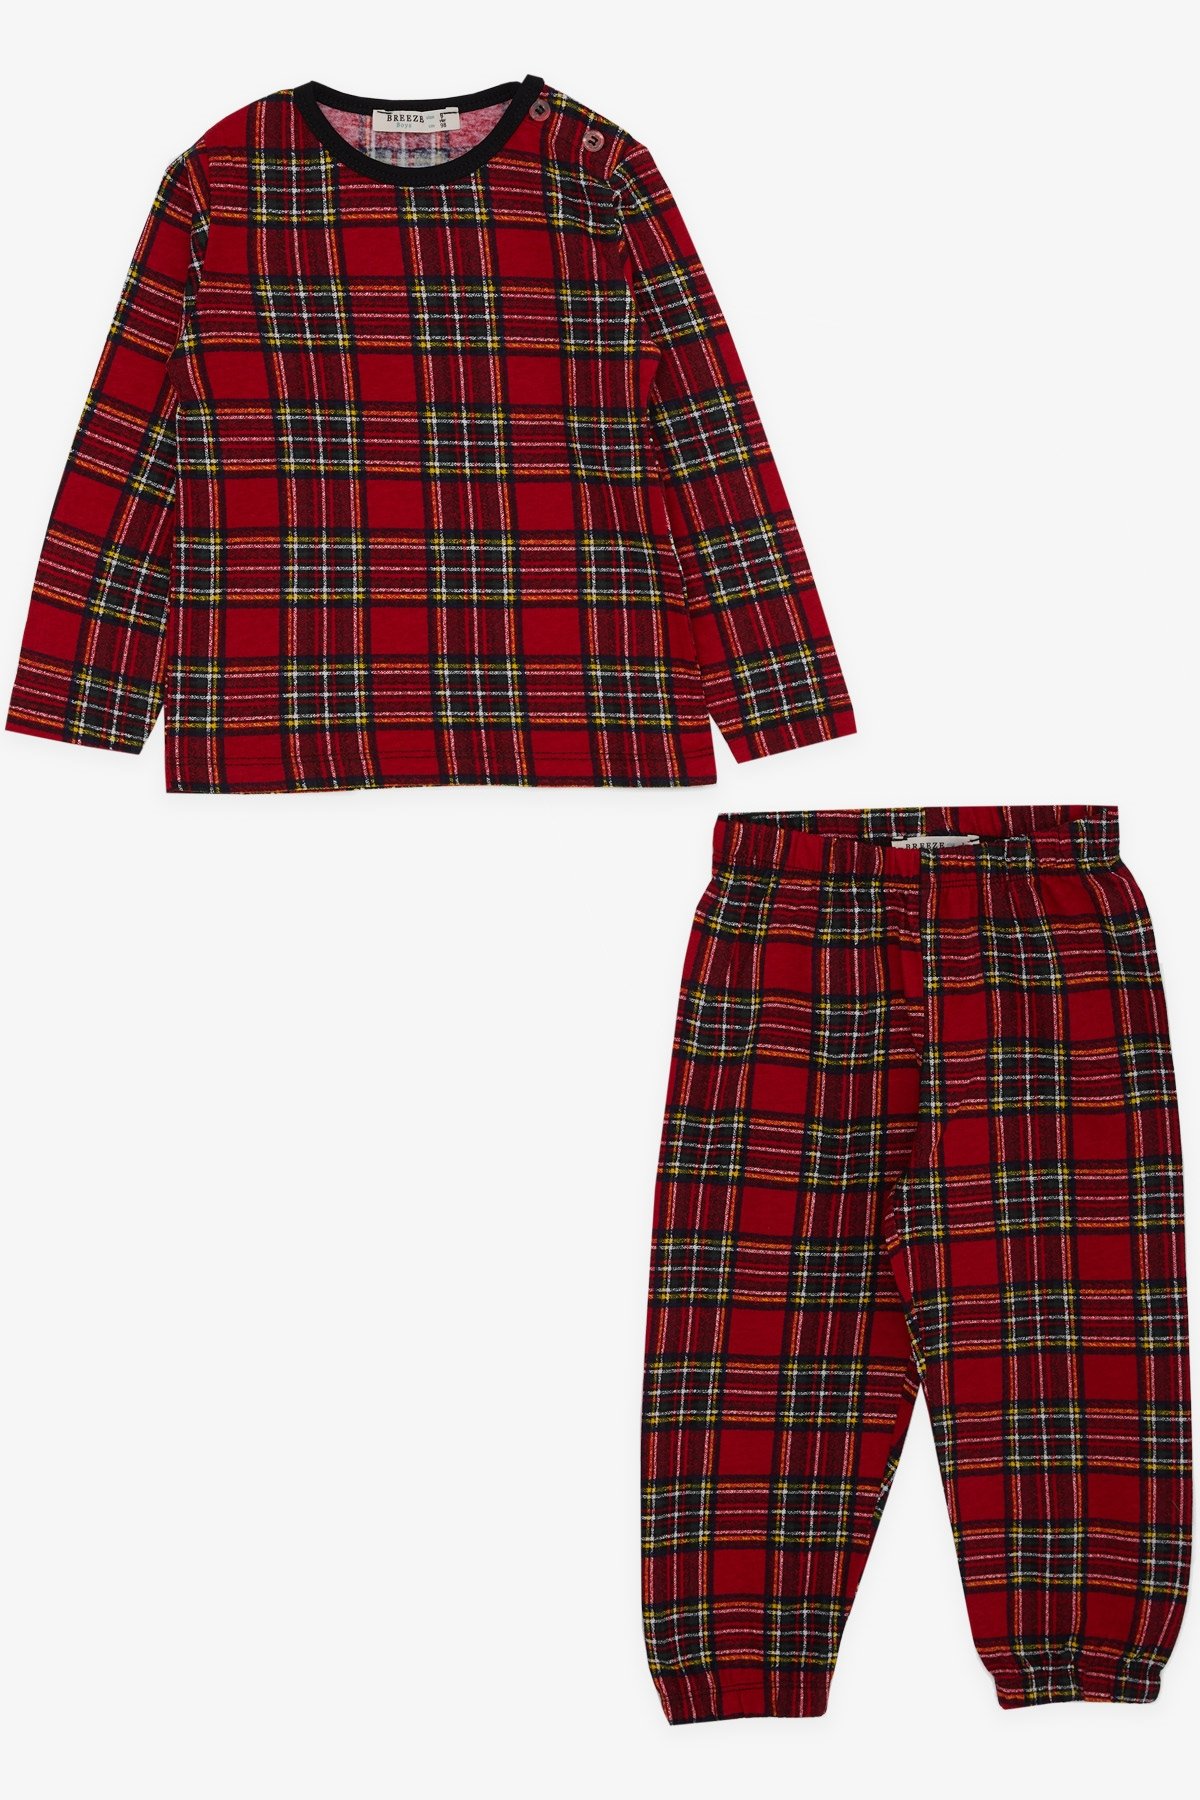 Erkek Bebek Pijama Takımı Ekose Desenli Kırmızı 9 Ay - Yumuşak Kumaşlı  Çocuk Pijamaları | Breeze